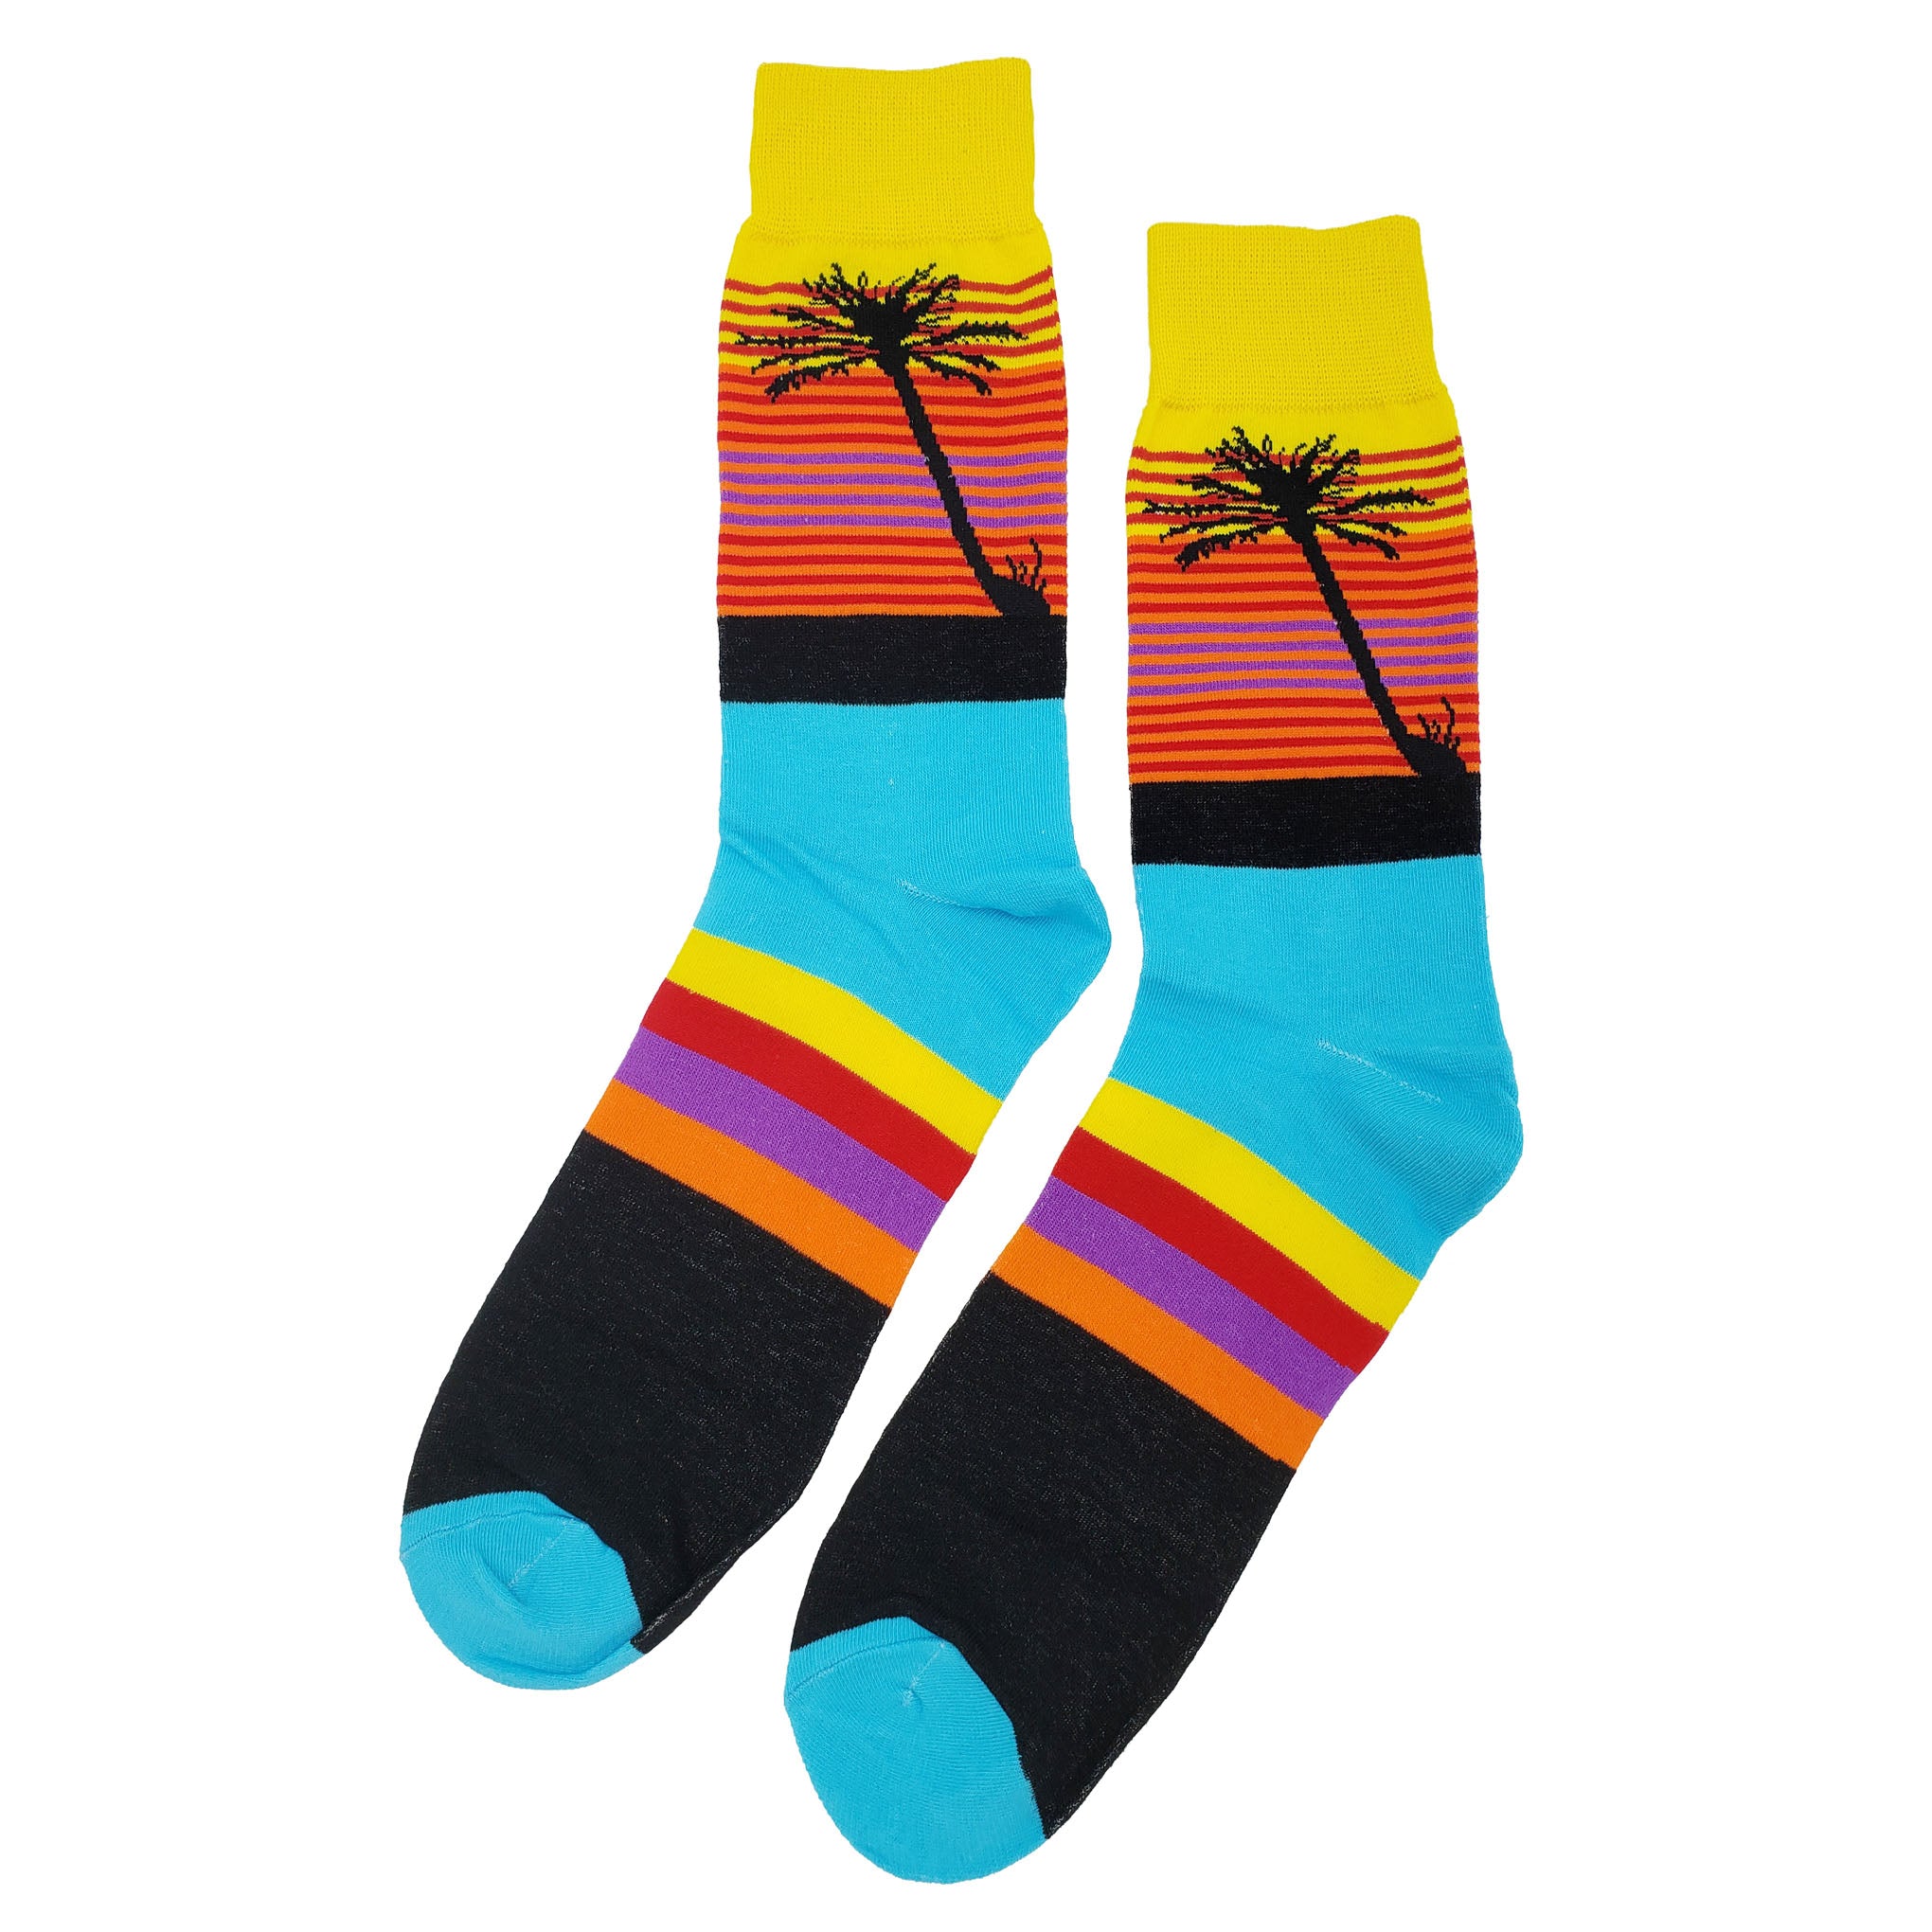 Palm Tree Horizon Socks - Fun and Crazy Socks at Sockfly.com